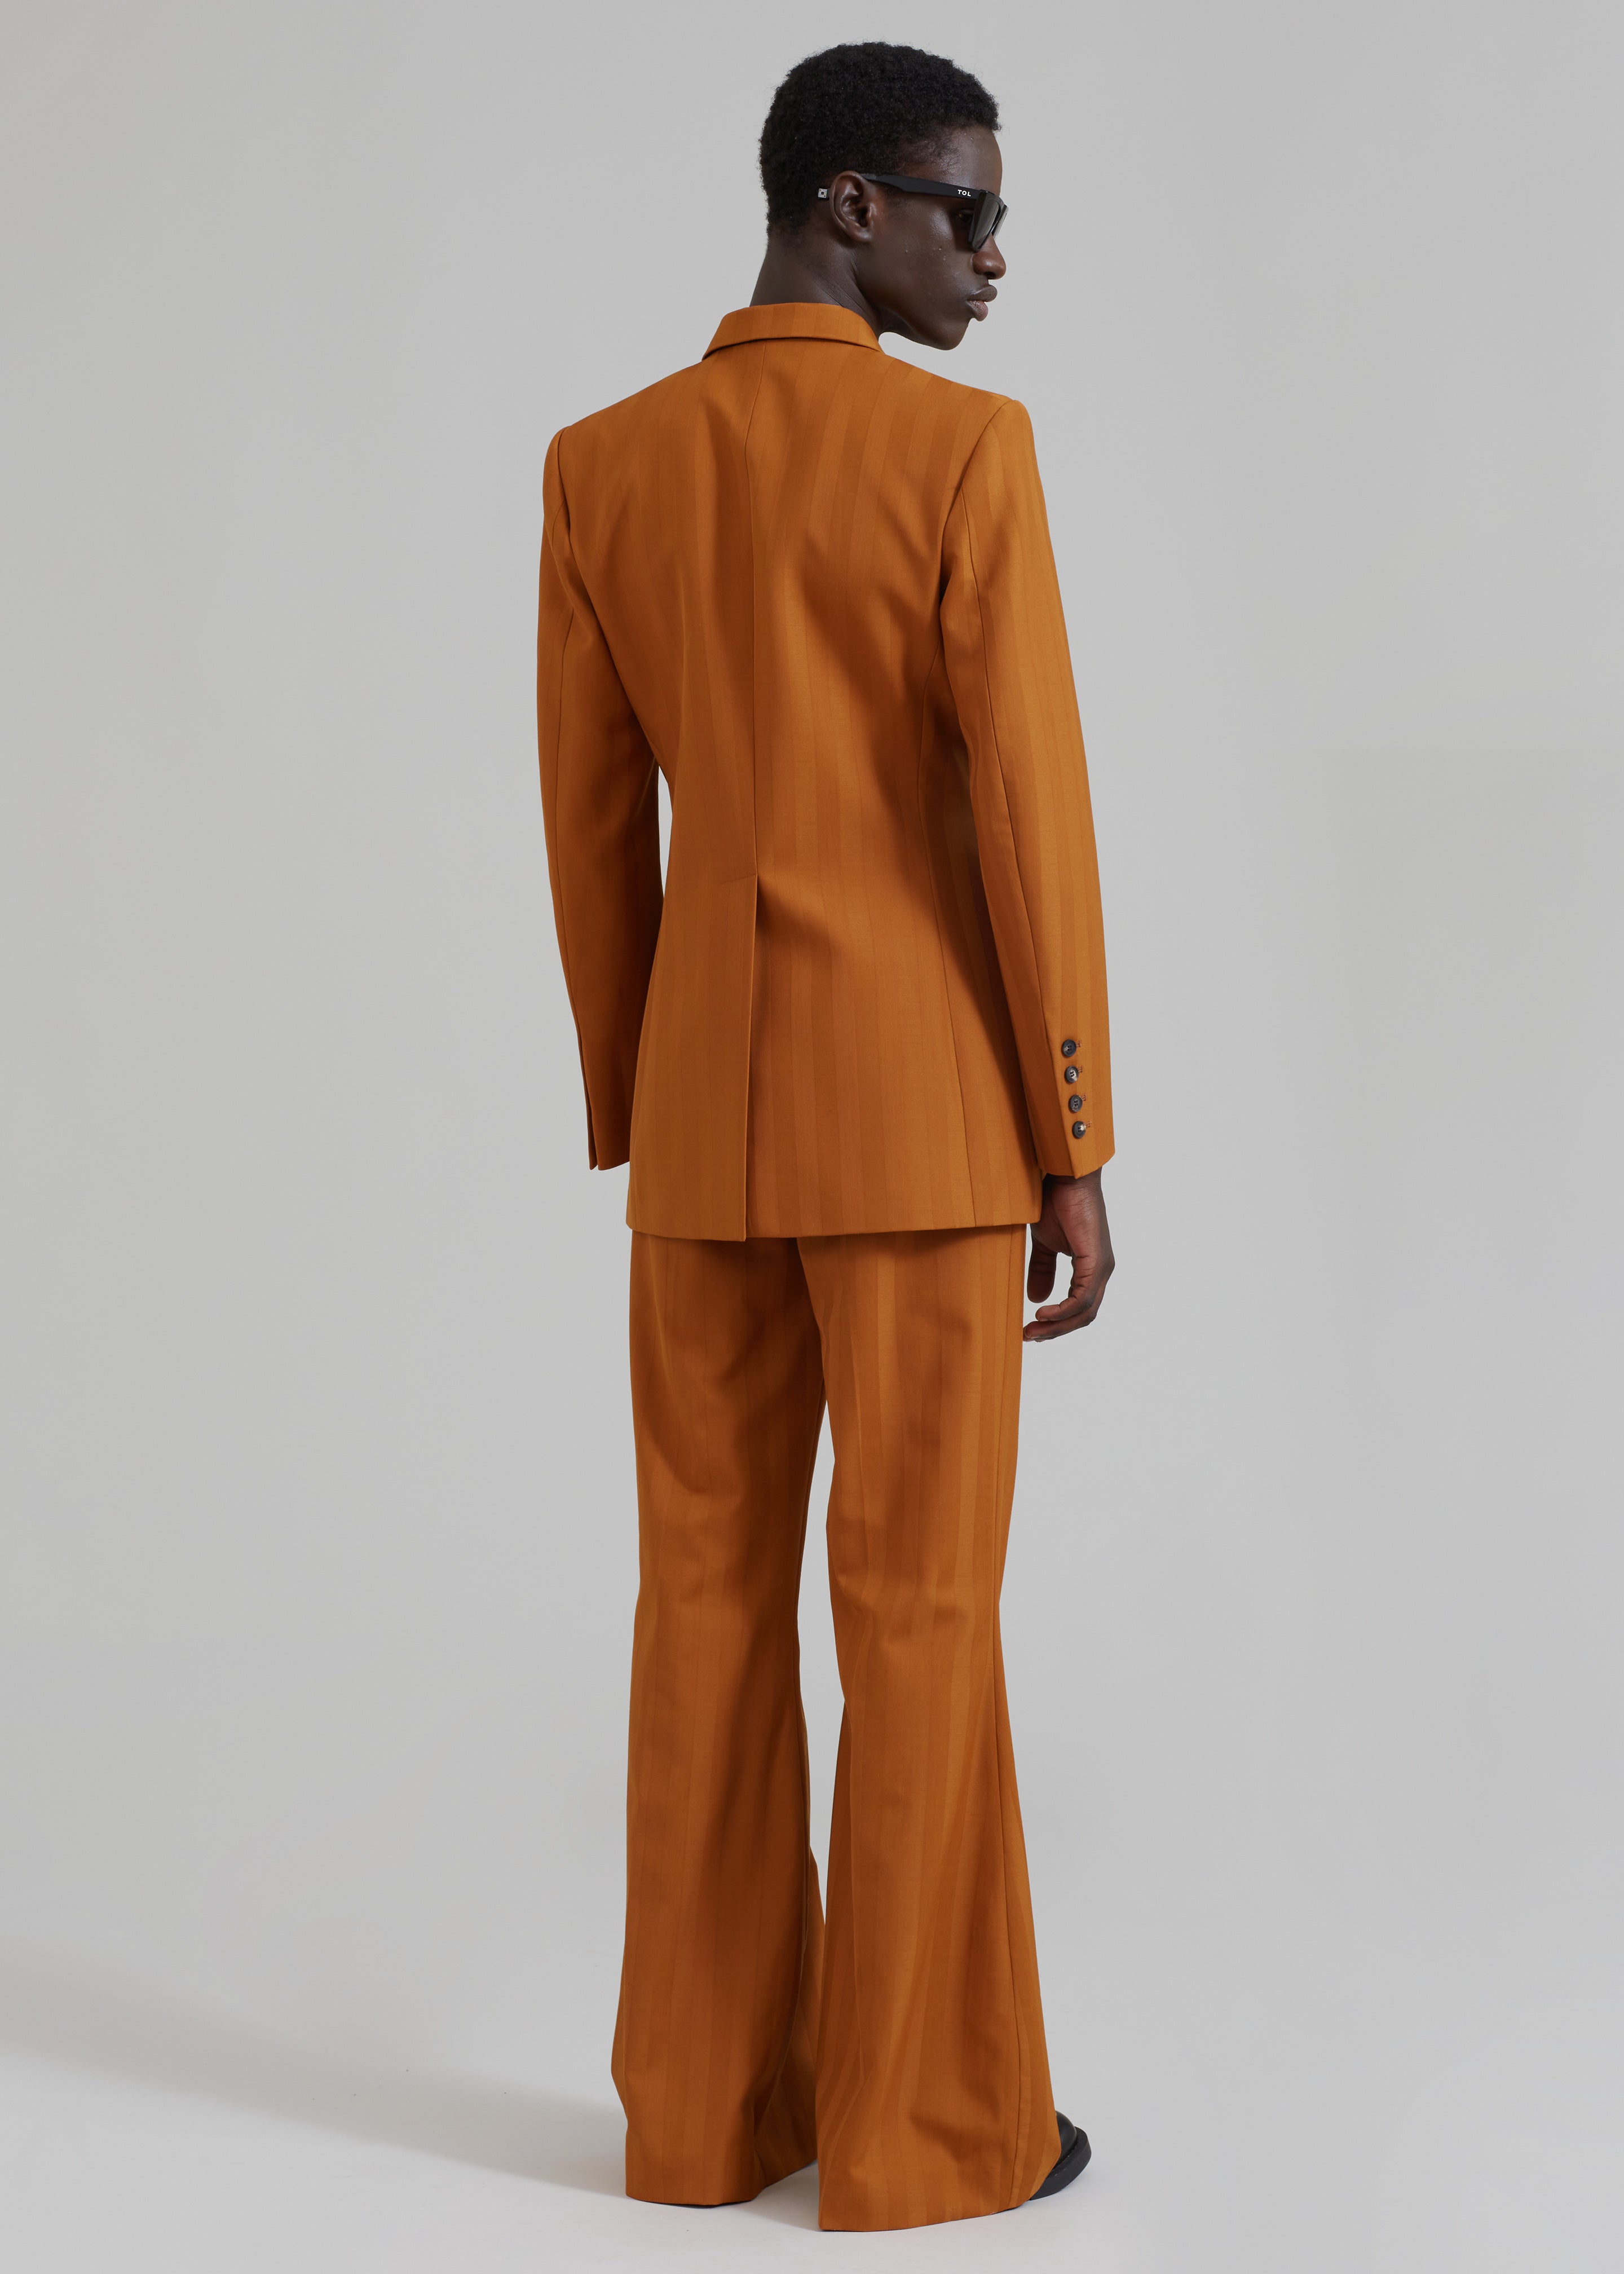 EGONLab Egonic Doubled Breasted Jacket - Orange Stripes Wool - 6